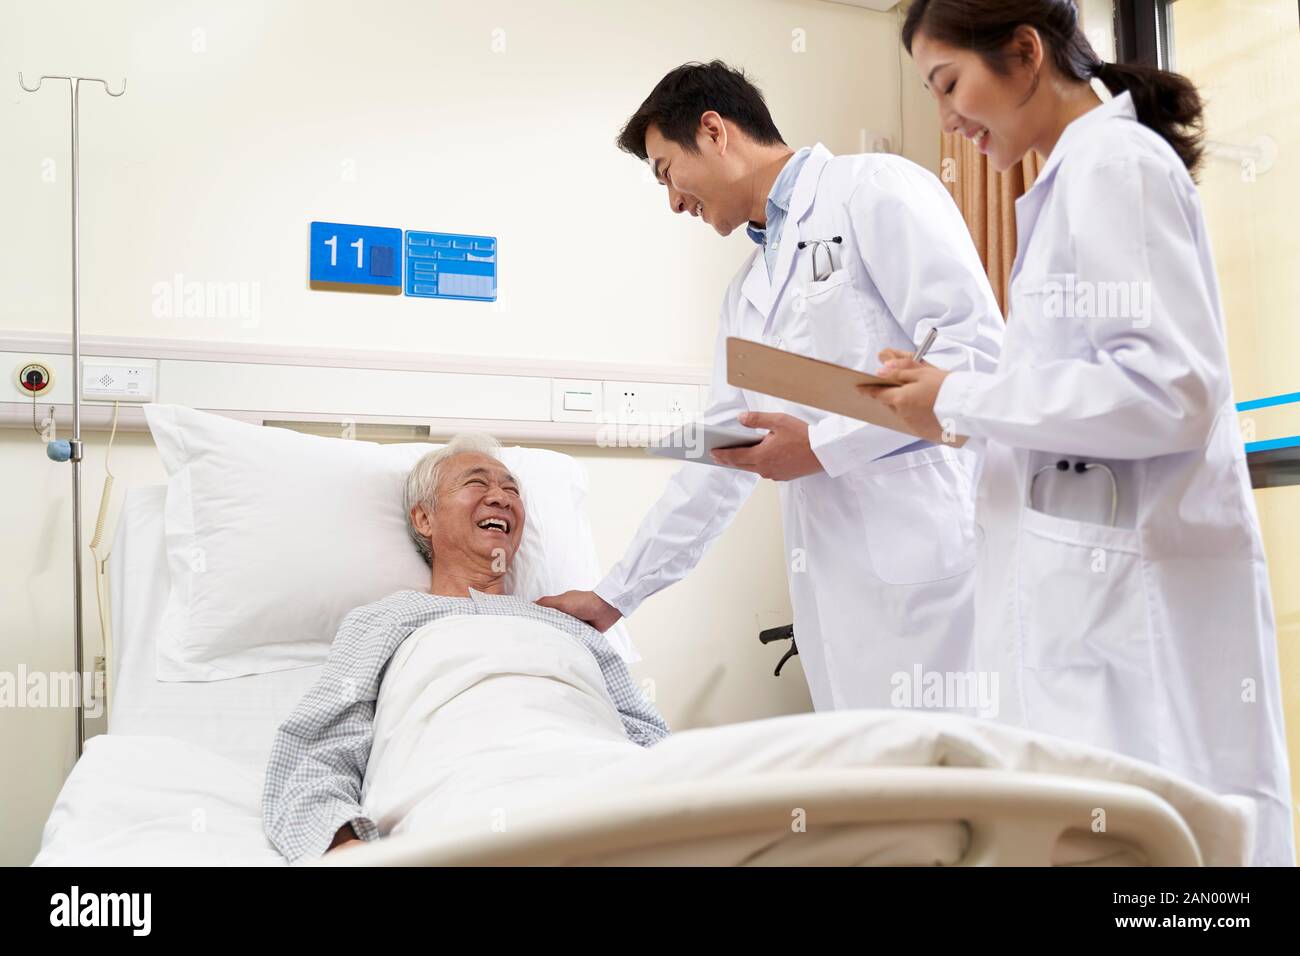 Zwei junge, freundliche asiatische Ärzte sprechen mit einem männlichen leitenden asiatischen Patienten am Krankenbett Stockfoto